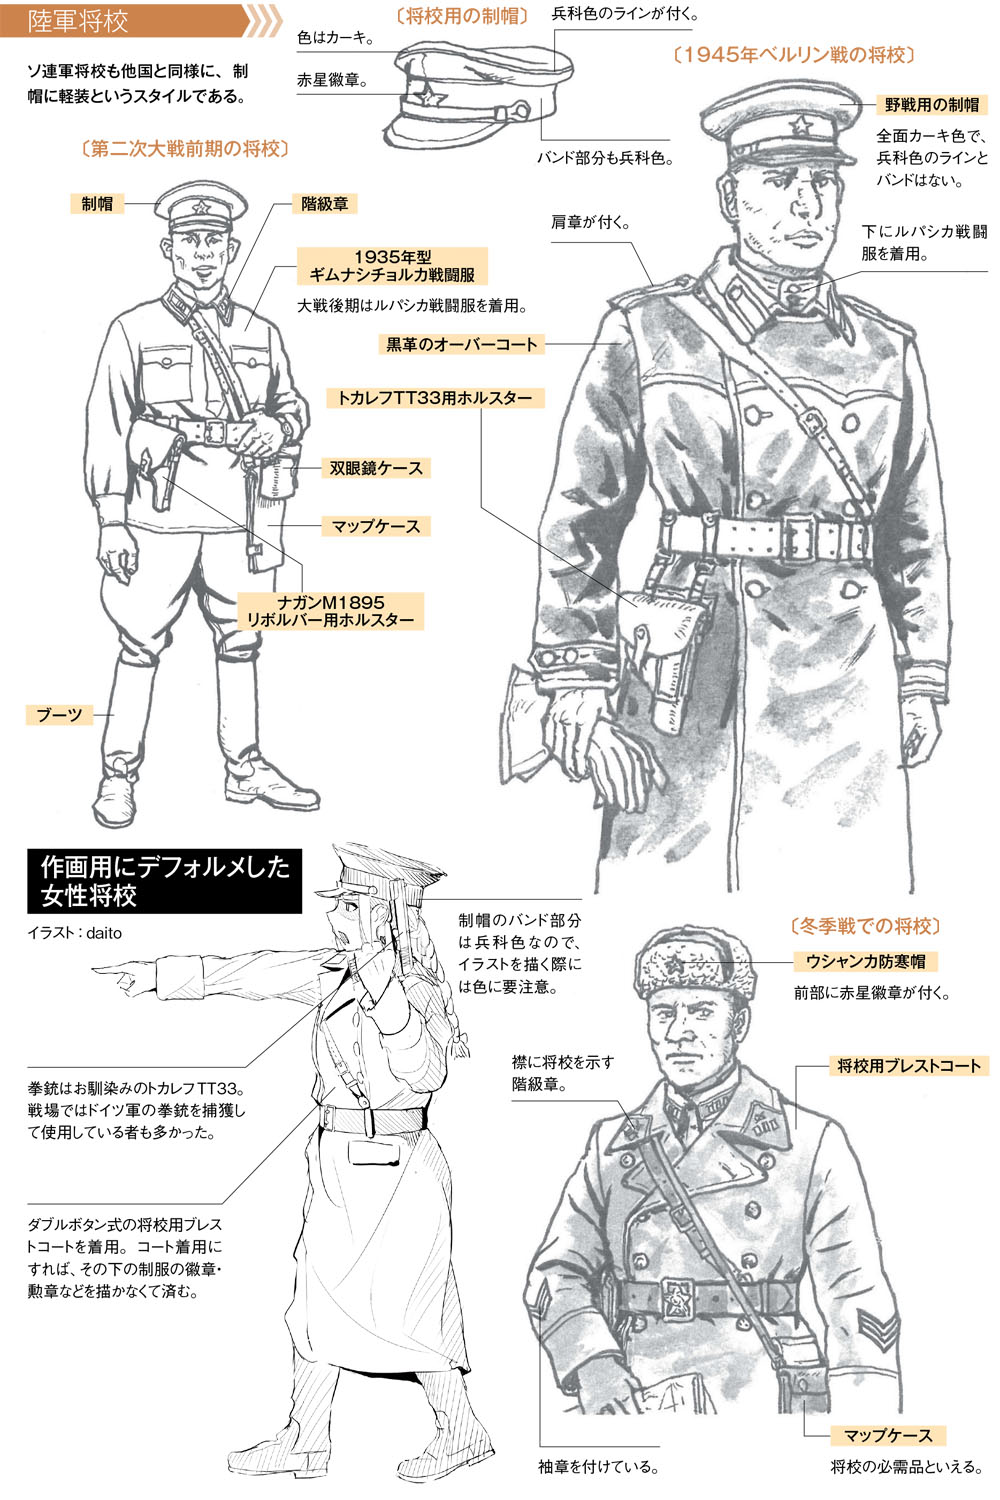 時期による装備の違いに気をつける 作画のための第二次大戦軍服